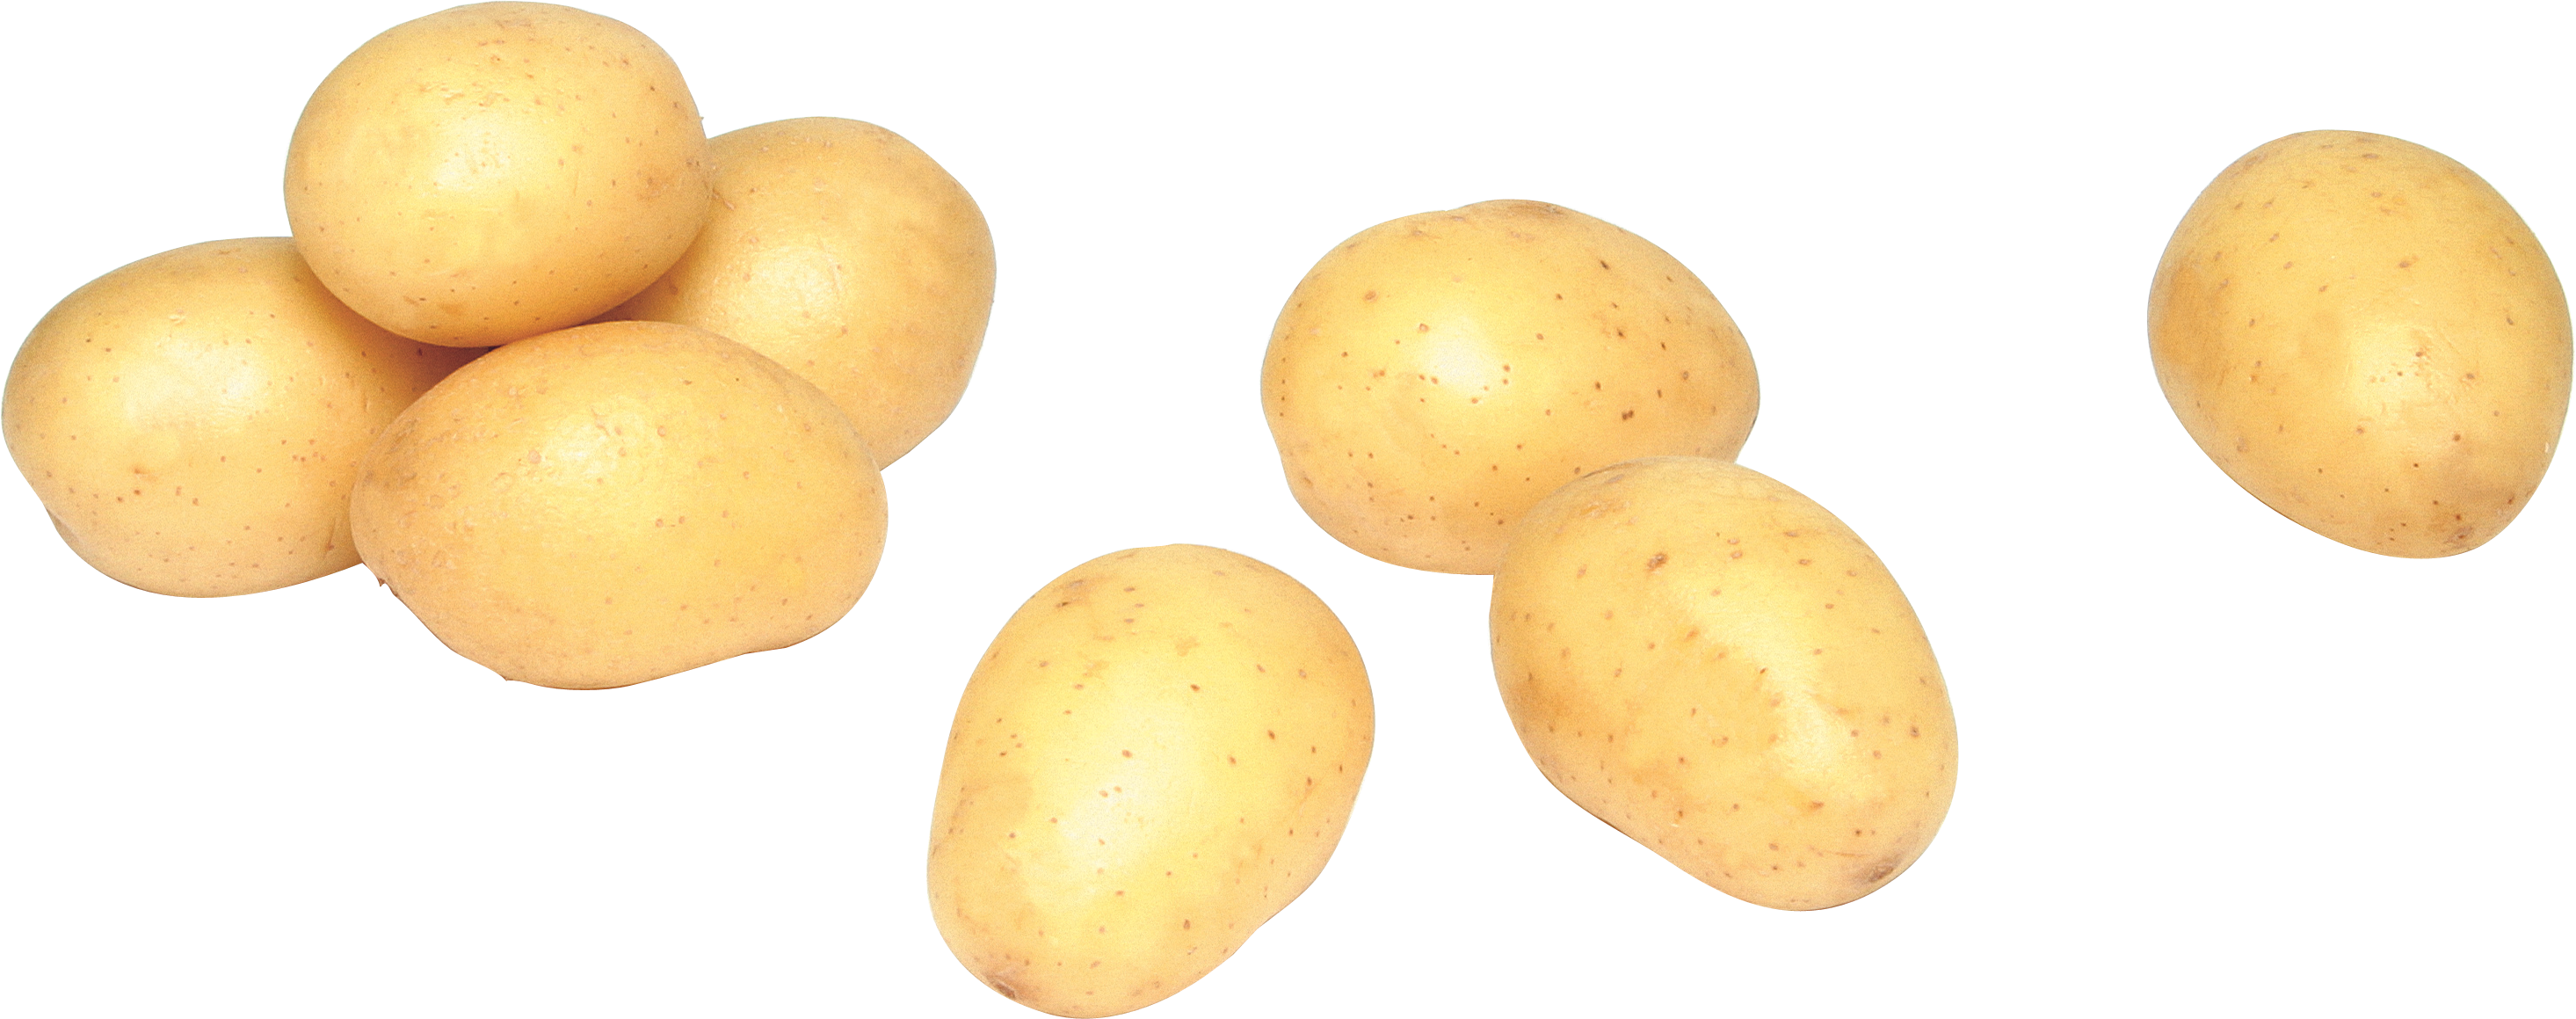 Küçük patates